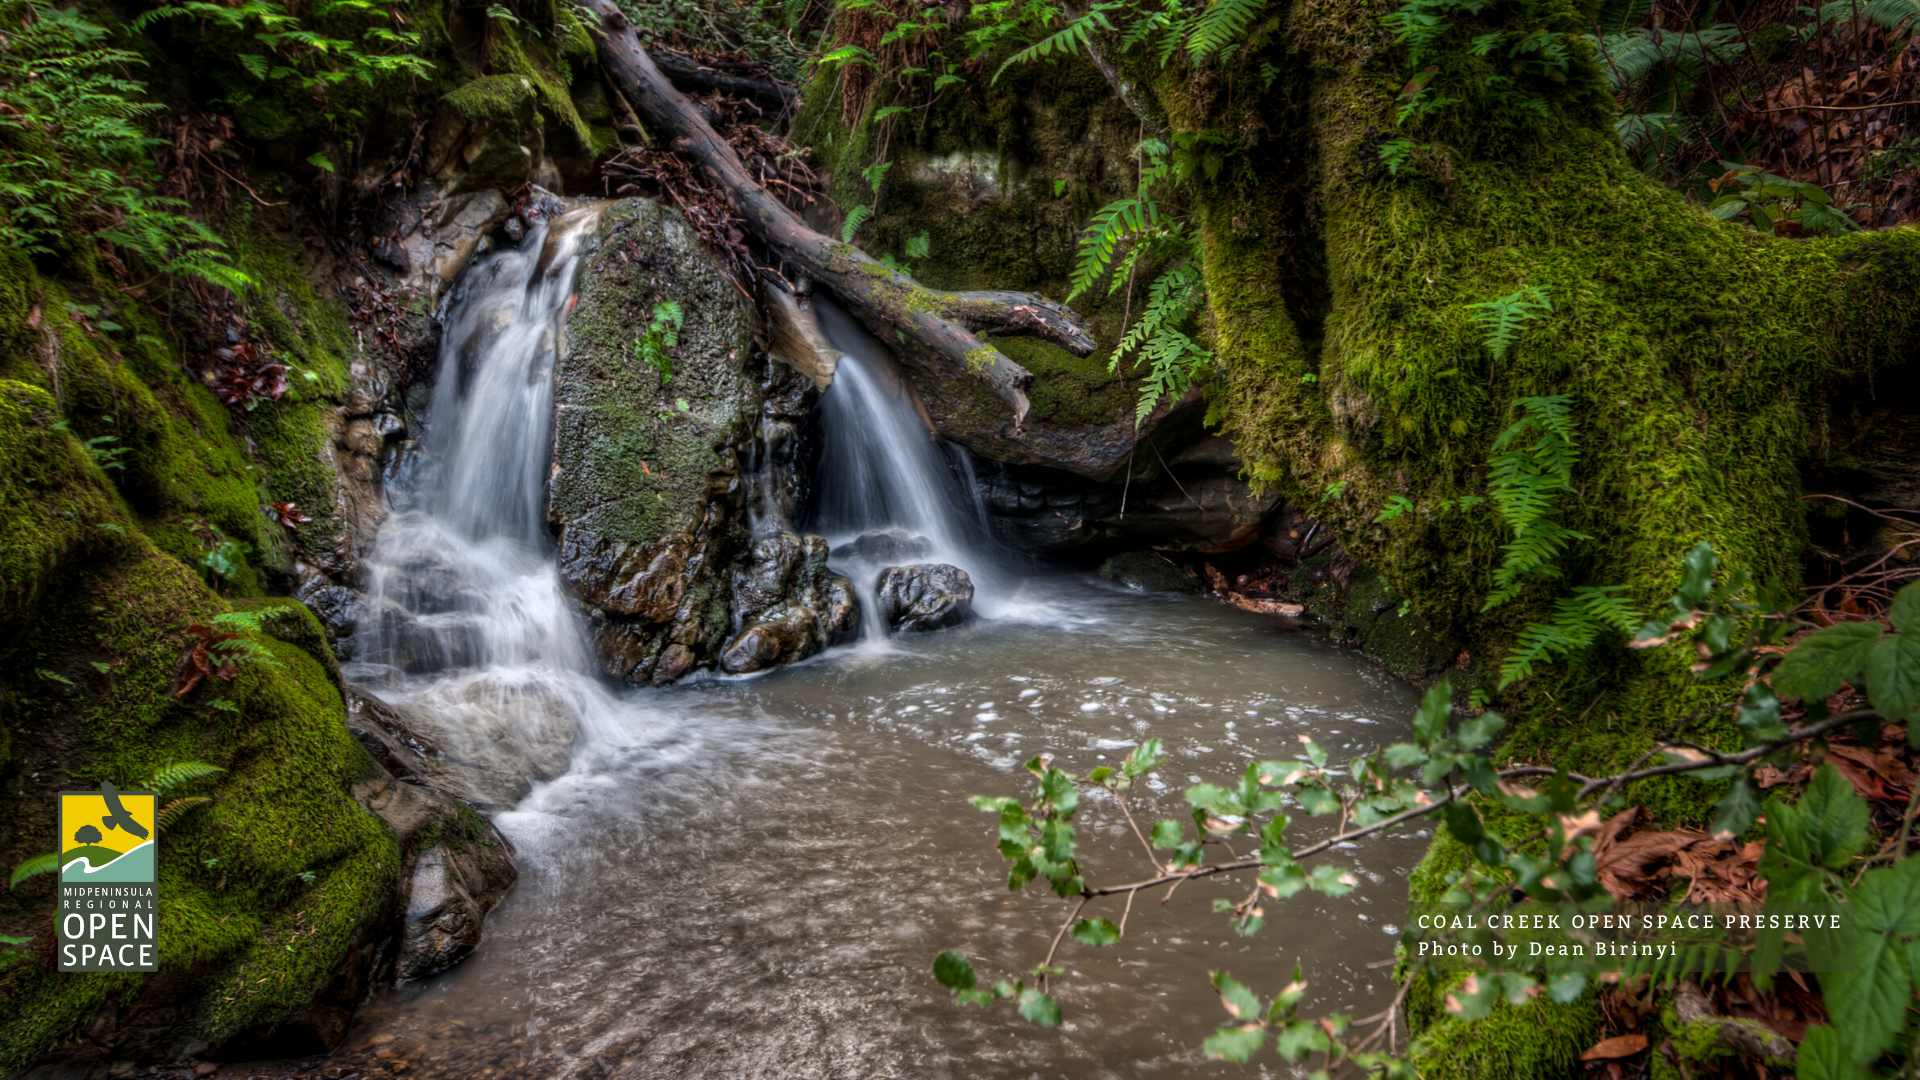 Waterfall at Coal Creek Preserve